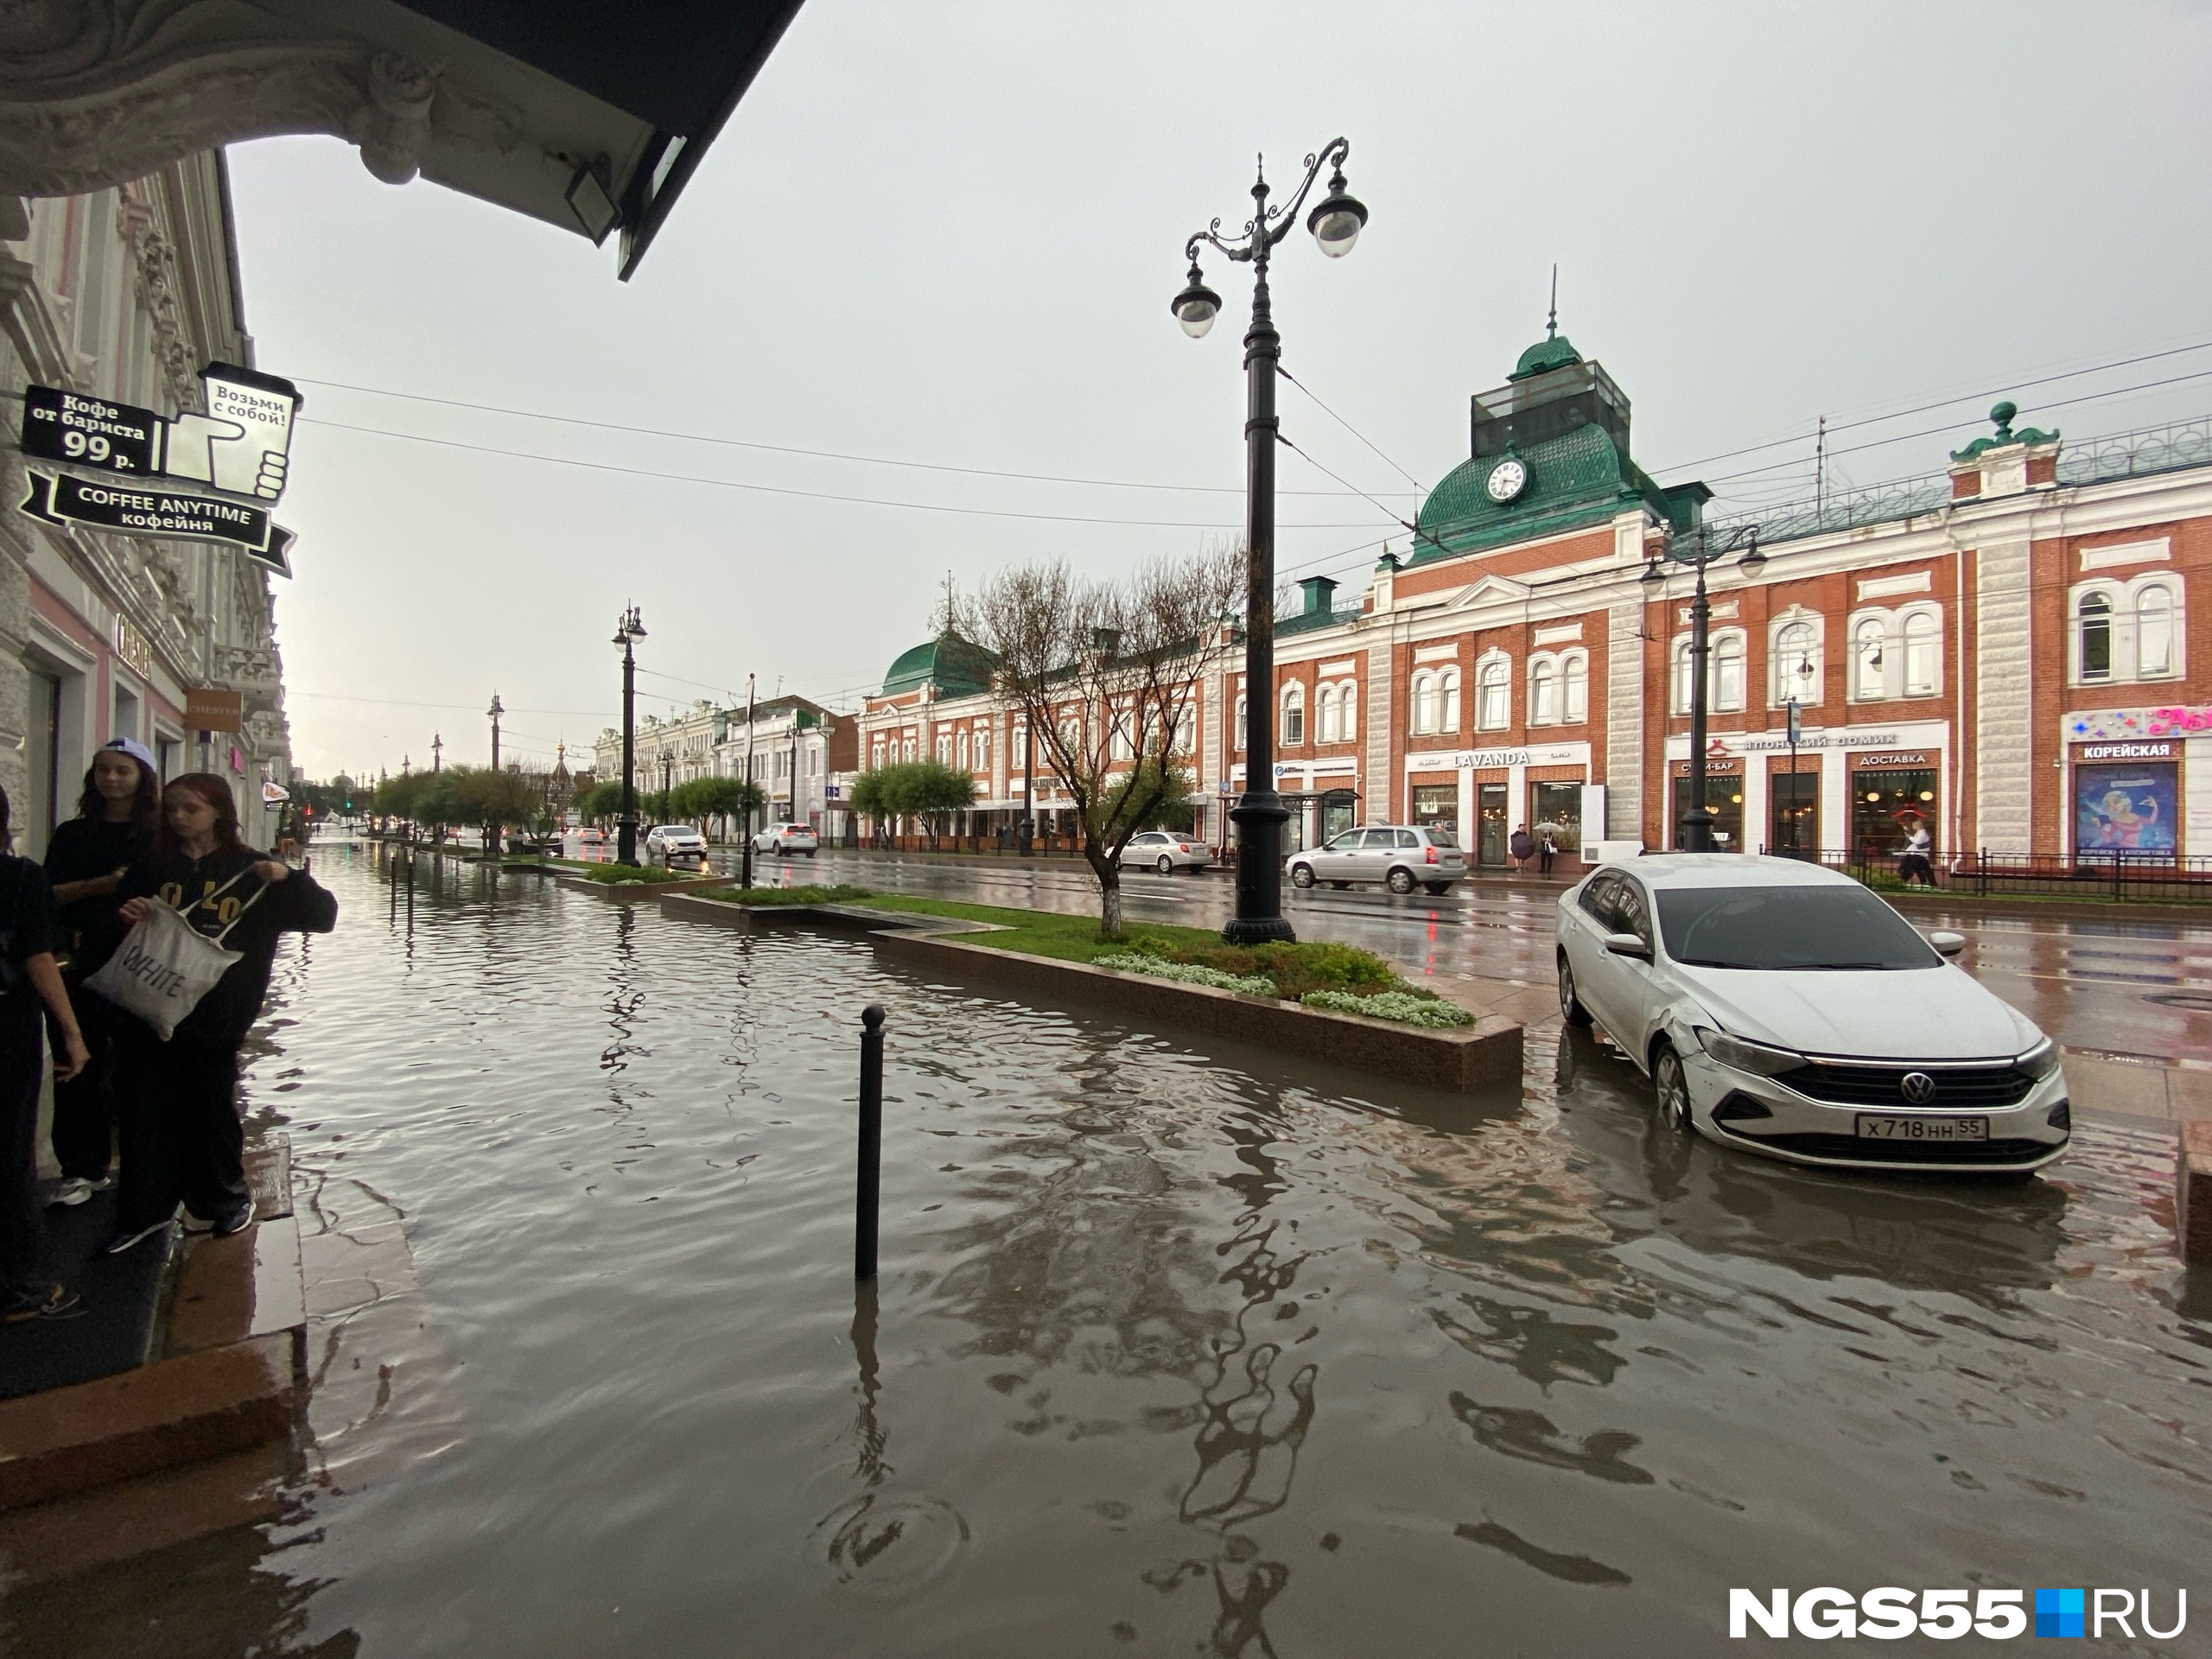 Машины уходят под воду, а в Камергерском появилось озеро: смотрим фото и видео затопленных омских улиц